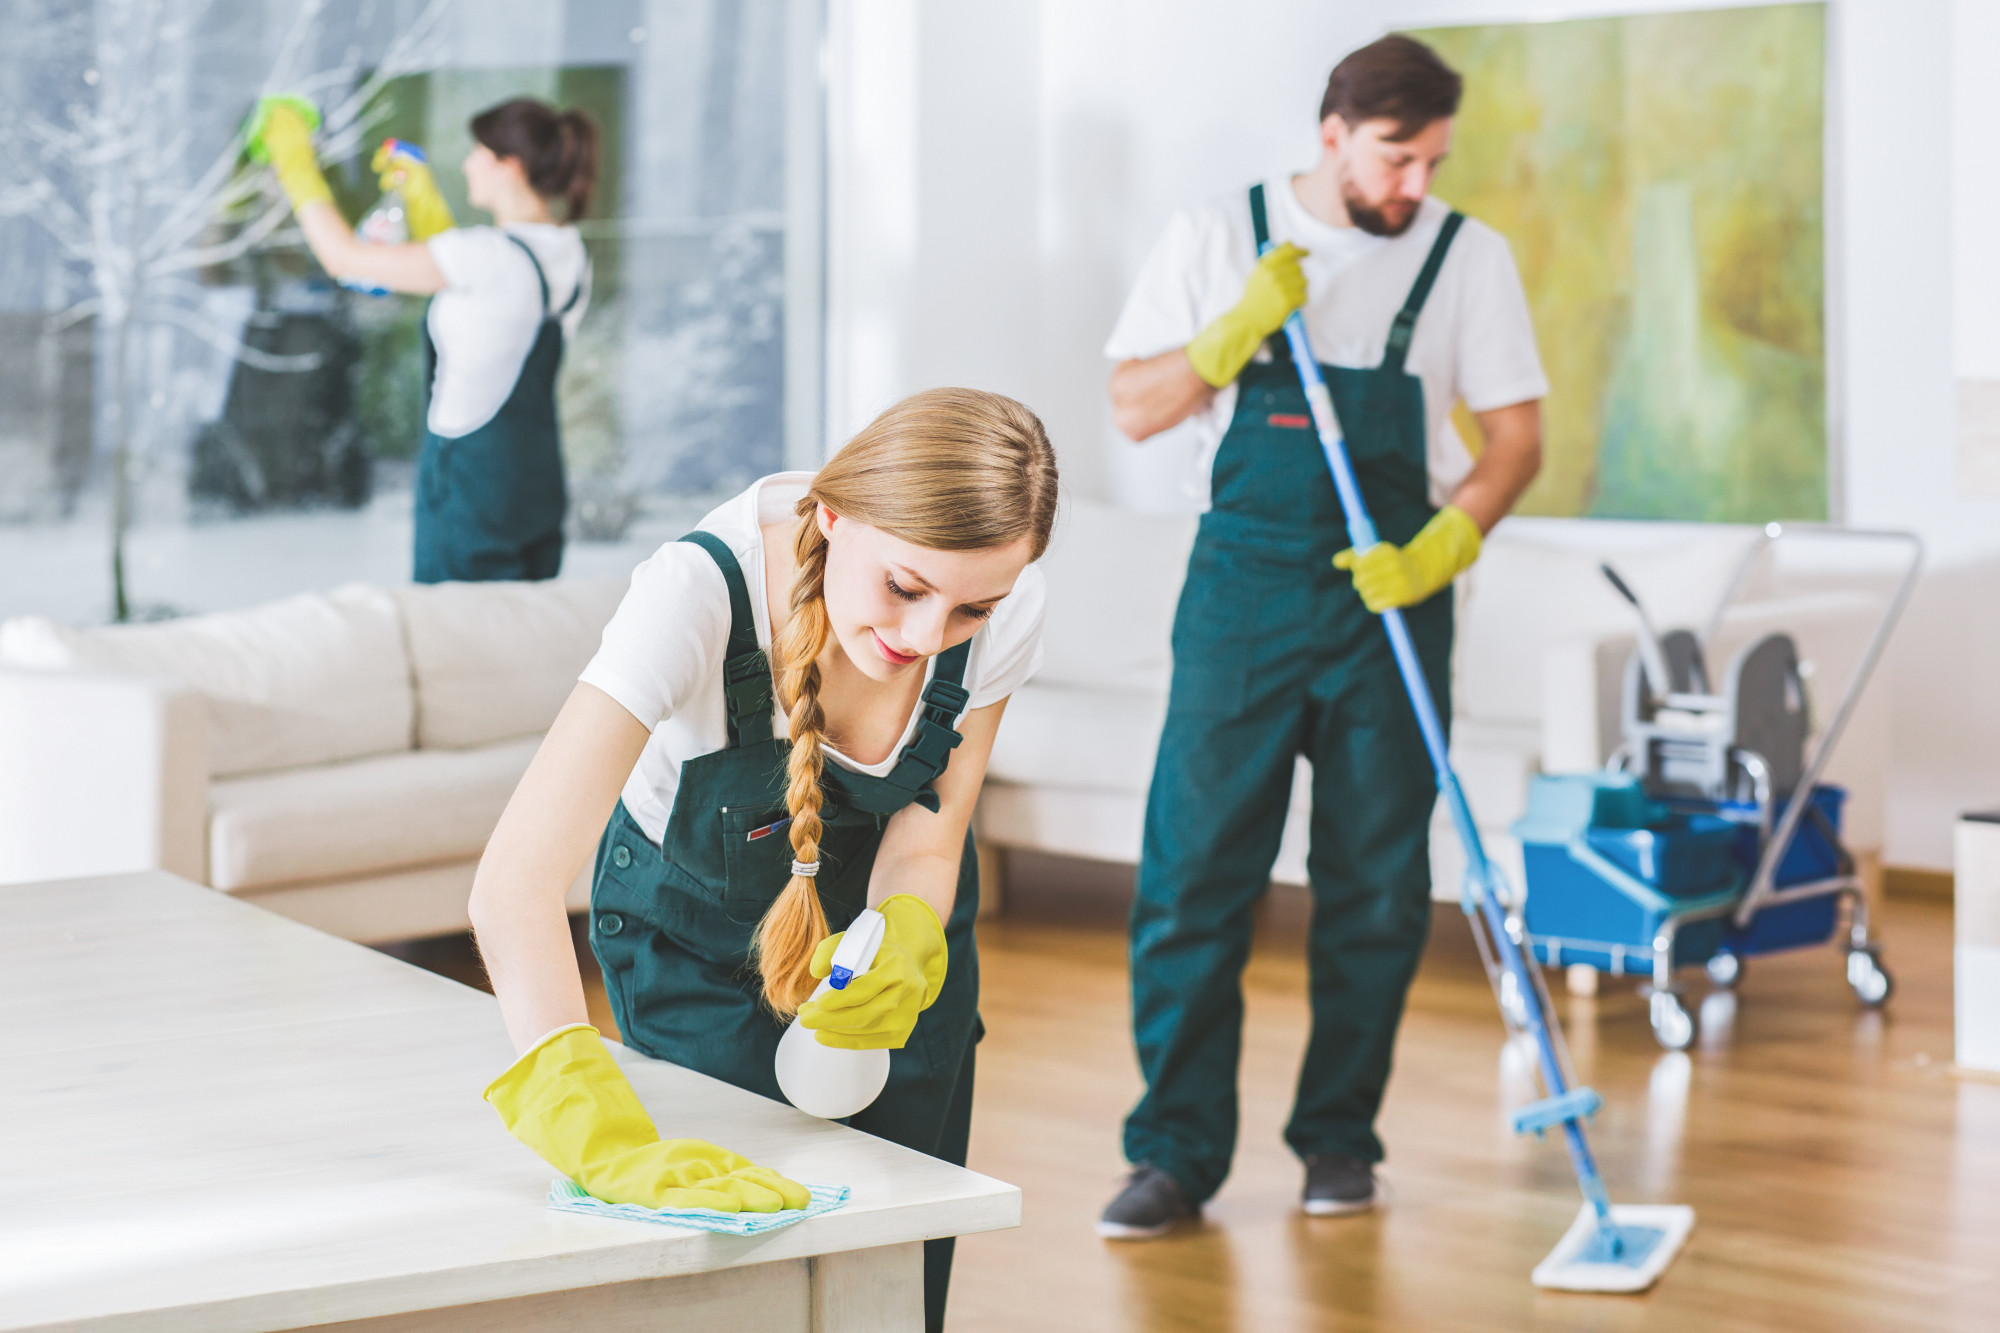 Wählen Sie CLEAN ADVANCE Gebäudereinigung für außergewöhnliche Reinigungsergebnisse. Kontaktieren Sie uns noch heute, um mehr über unsere Dienstleistungen zu erfahren oder ein unverbindliches Angebot zu erhalten.